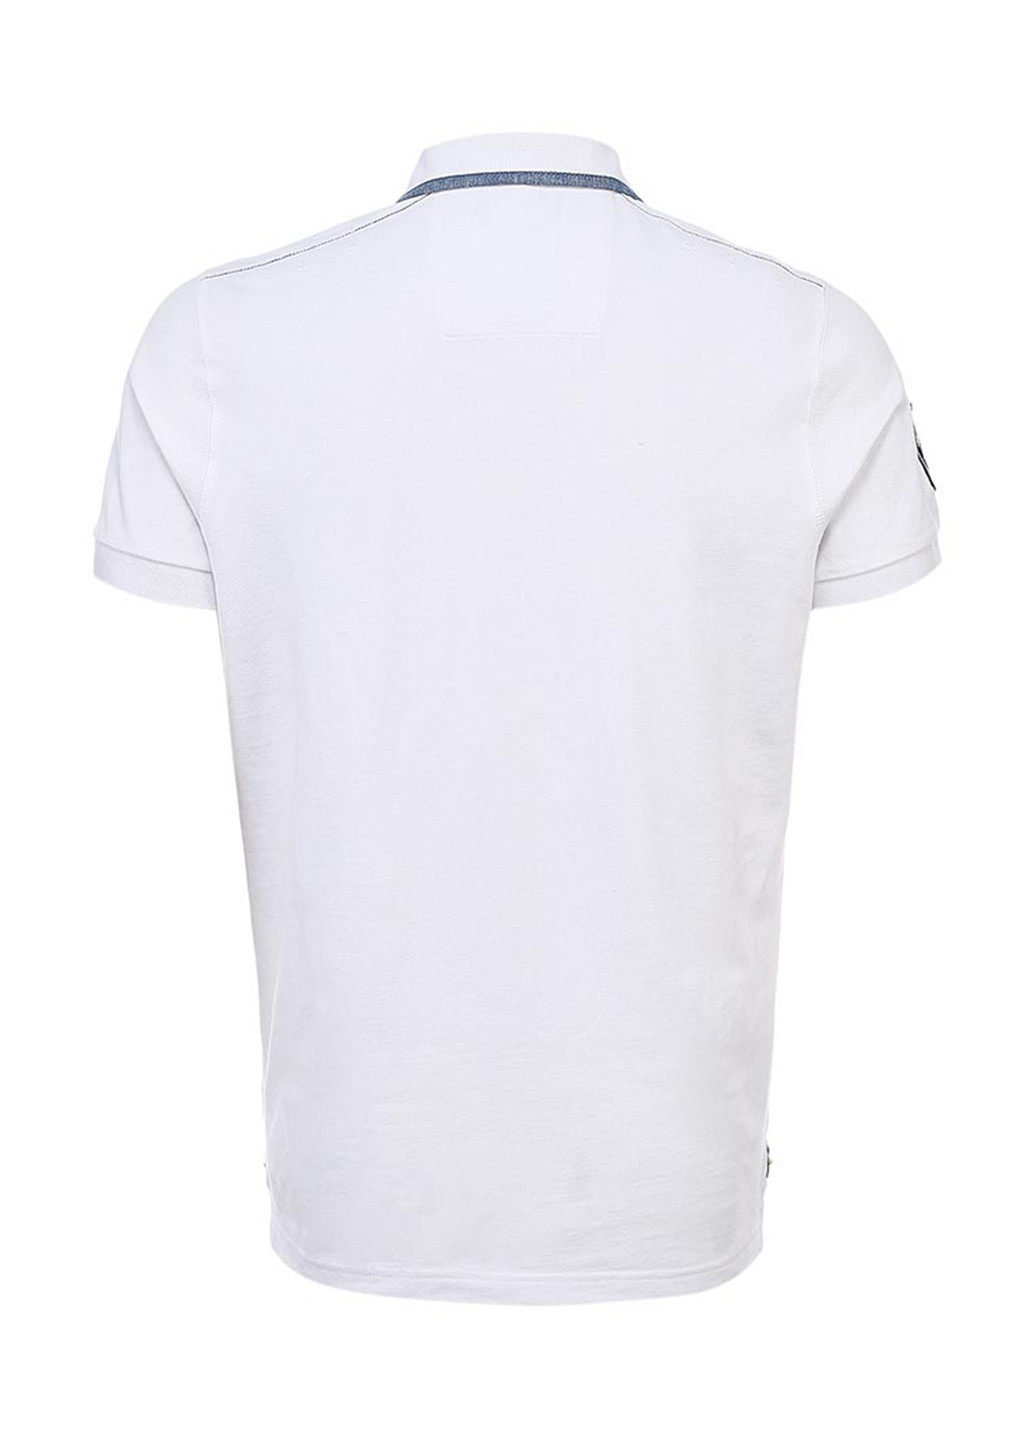 Белая футболка-поло для мужчин N.Z.A. с рисунком